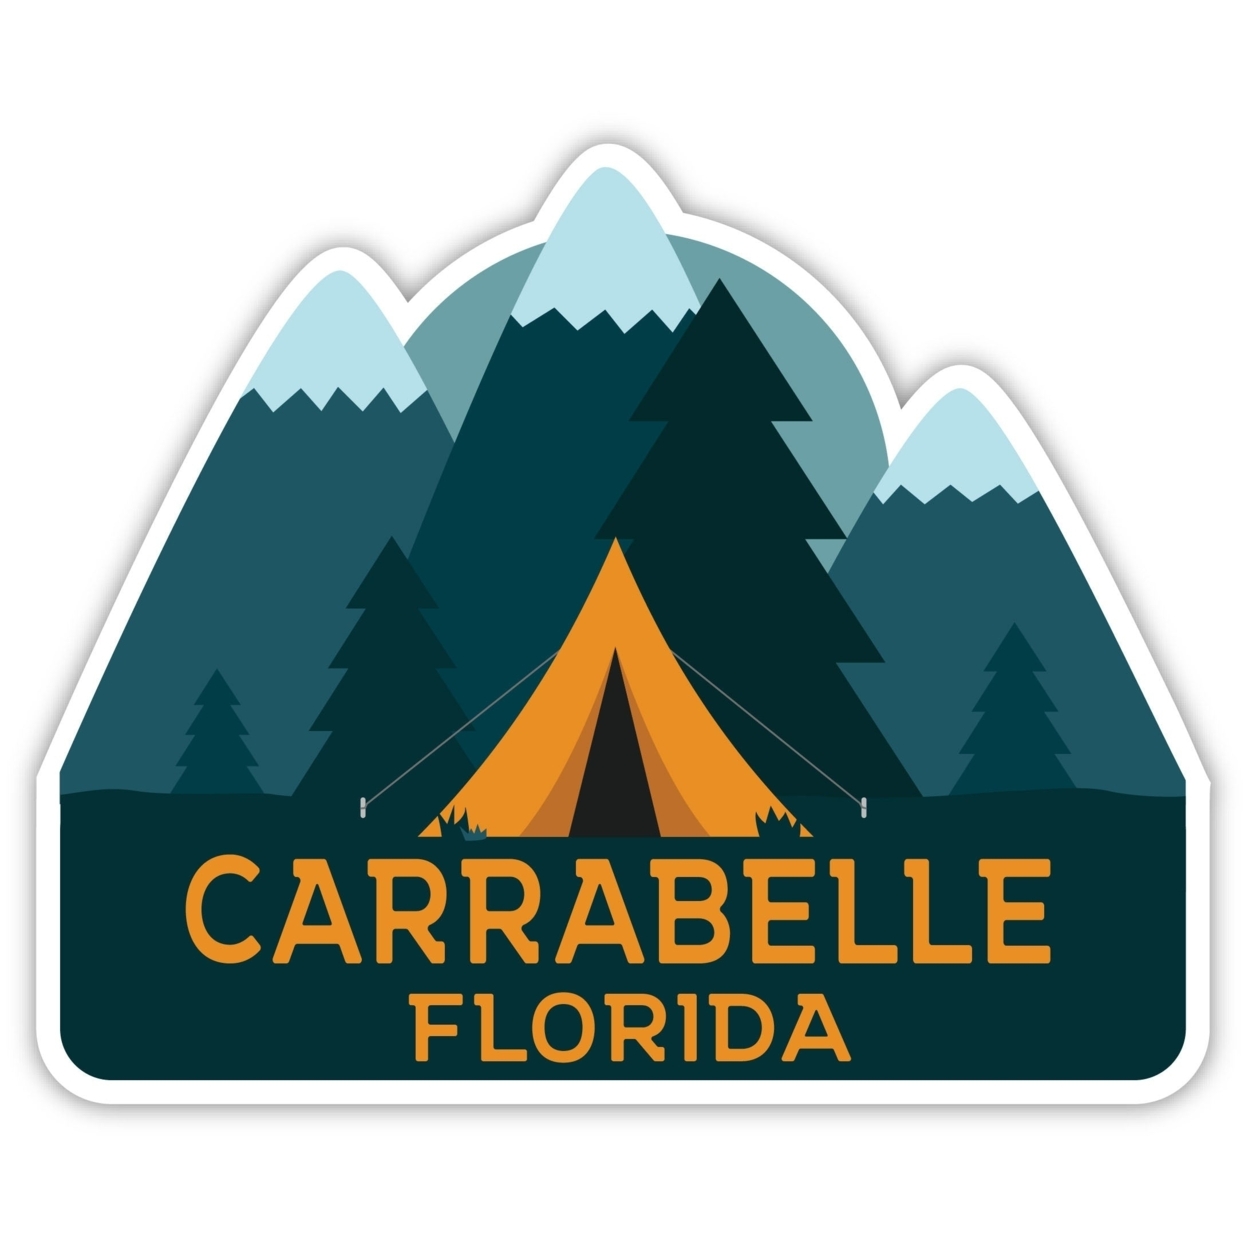 Carrabelle Florida Souvenir Decorative Stickers (Choose Theme And Size) - Single Unit, 6-Inch, Tent